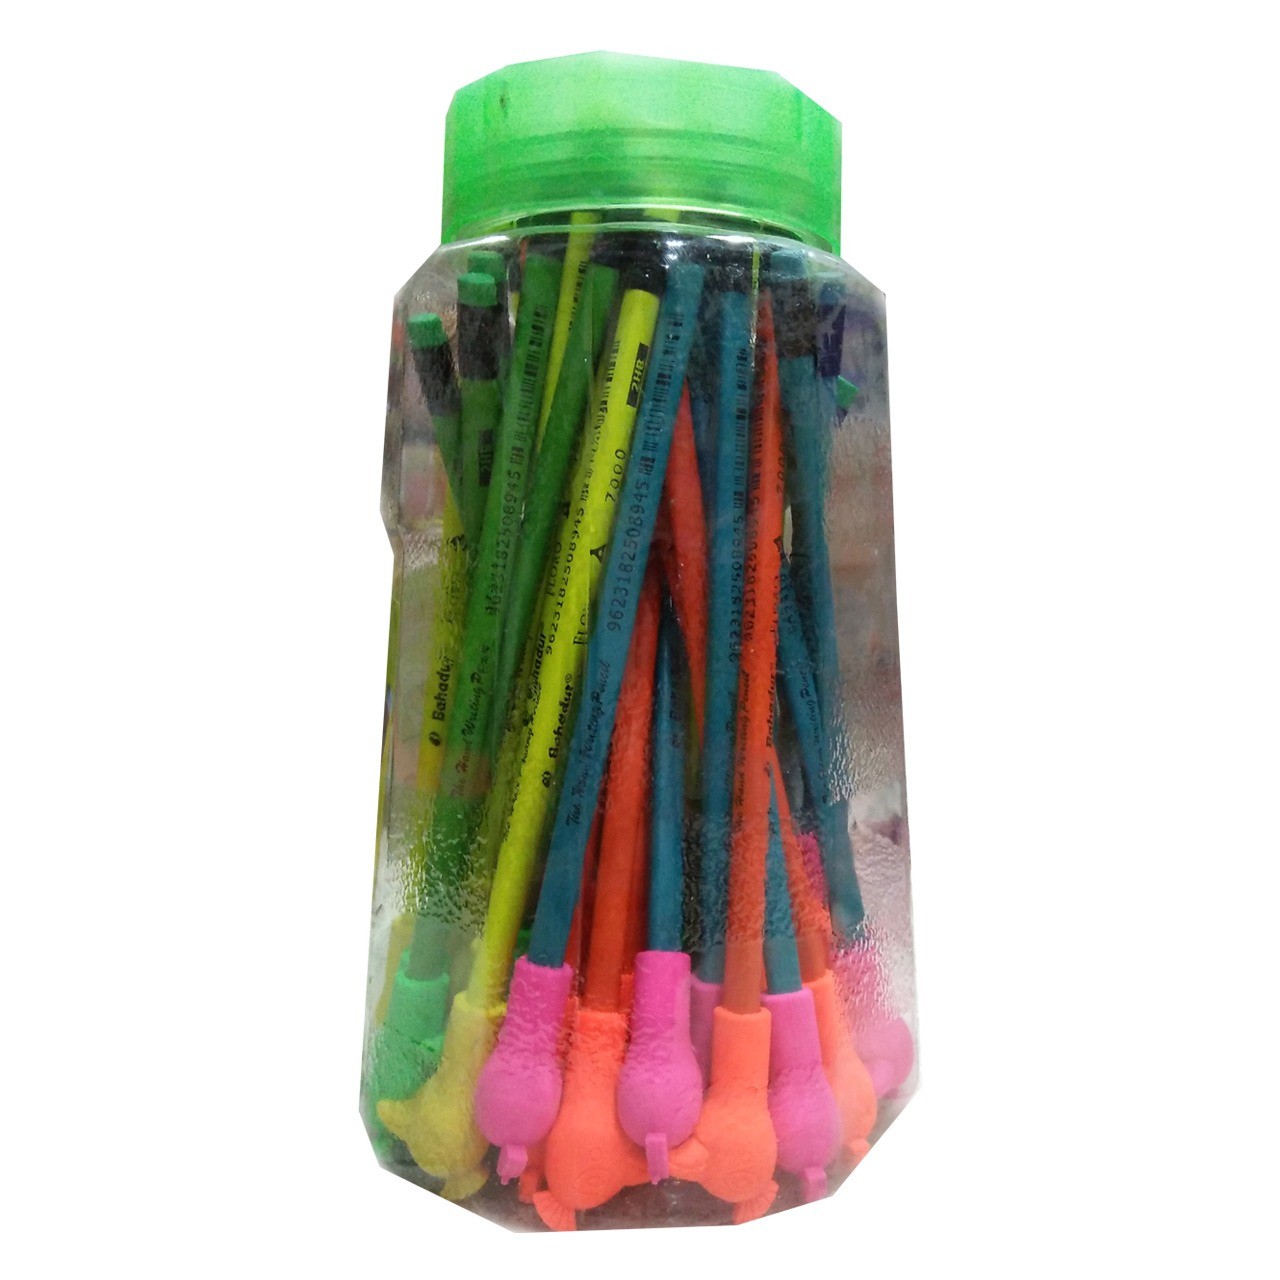 Bahadur 2in1 Floro Lead Pencil - 2HB Pencils - 48 Pieces